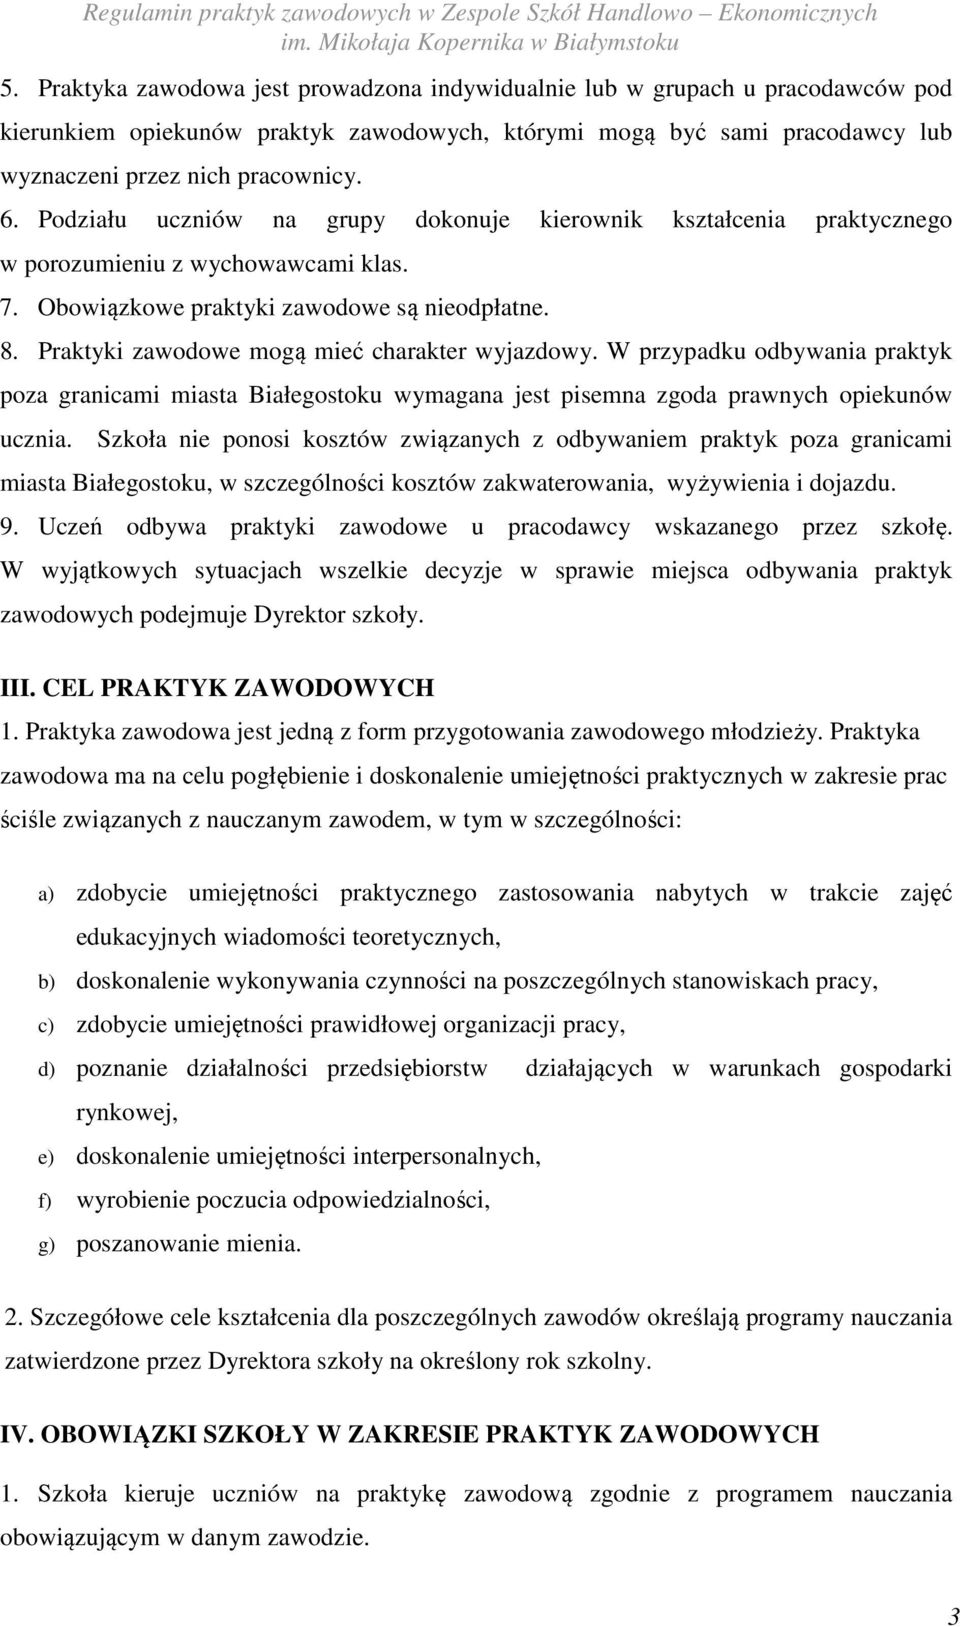 Praktyki zawodowe mogą mieć charakter wyjazdowy. W przypadku odbywania praktyk poza granicami miasta Białegostoku wymagana jest pisemna zgoda prawnych opiekunów ucznia.